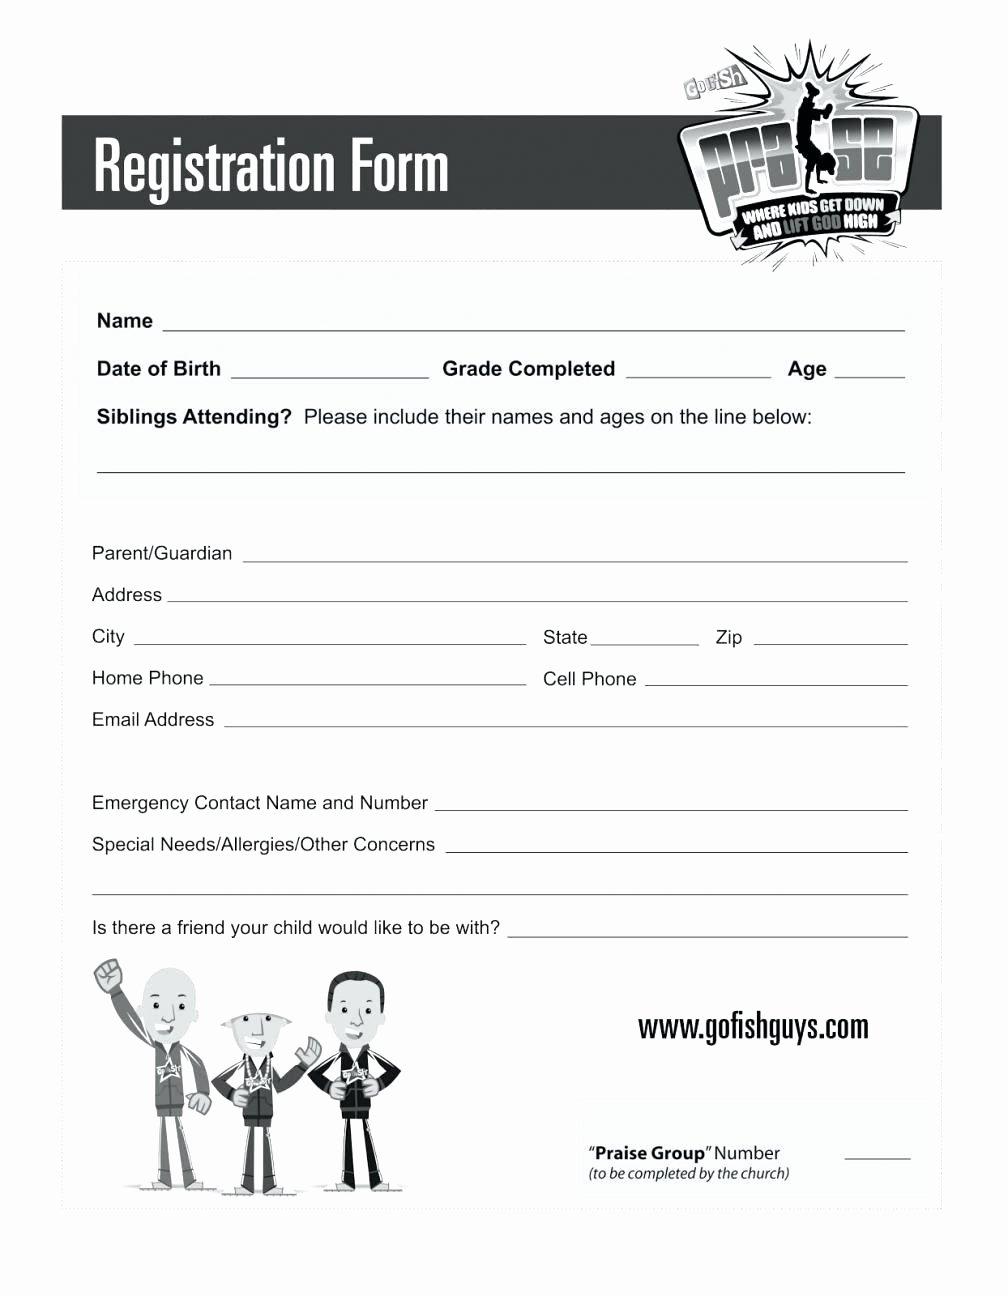 Sample Conference Registration form Template